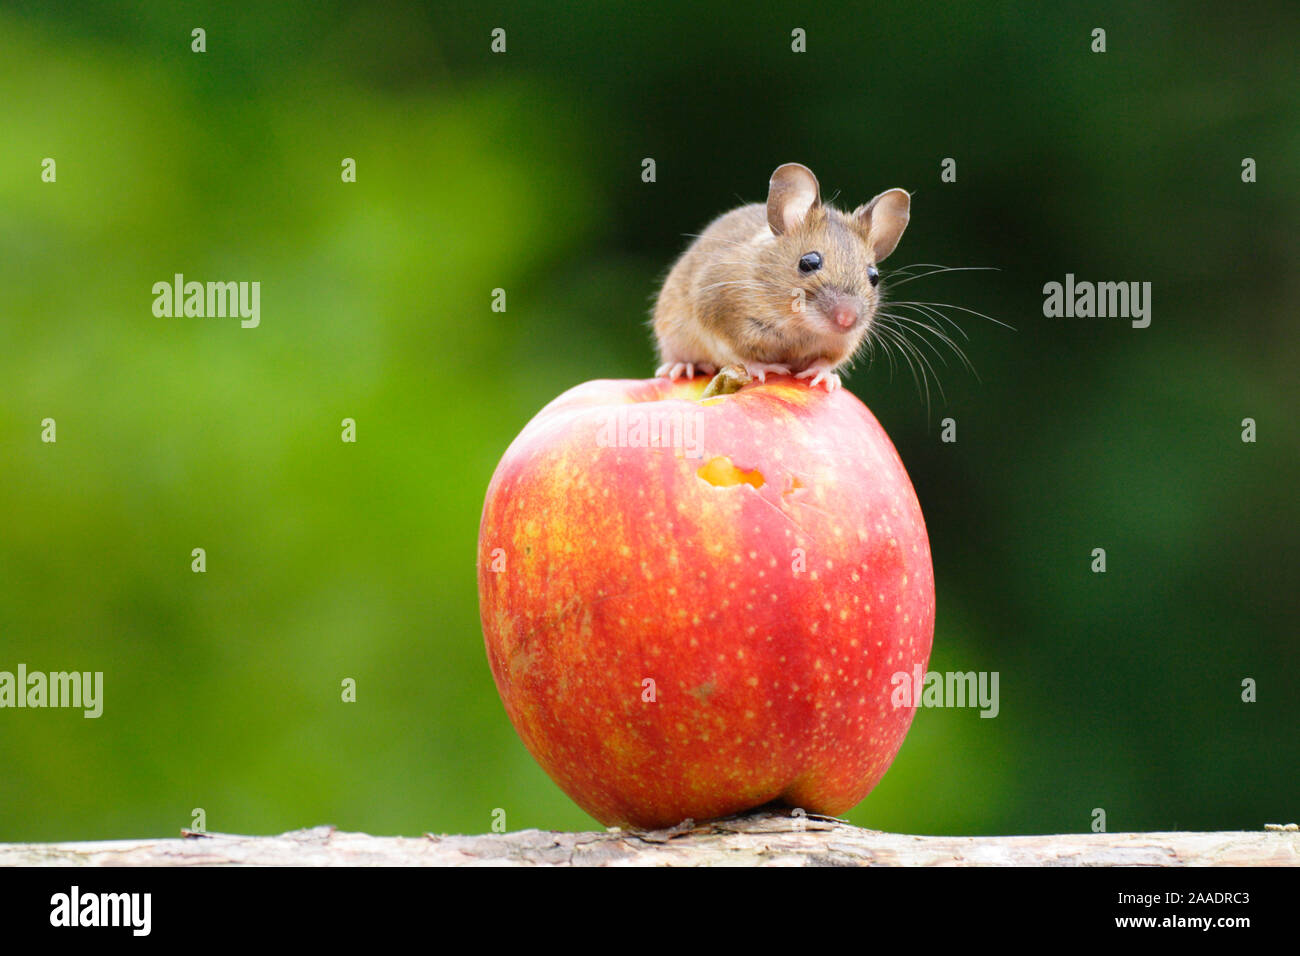 Maus auf einem Apfel, captive, Stock Photo